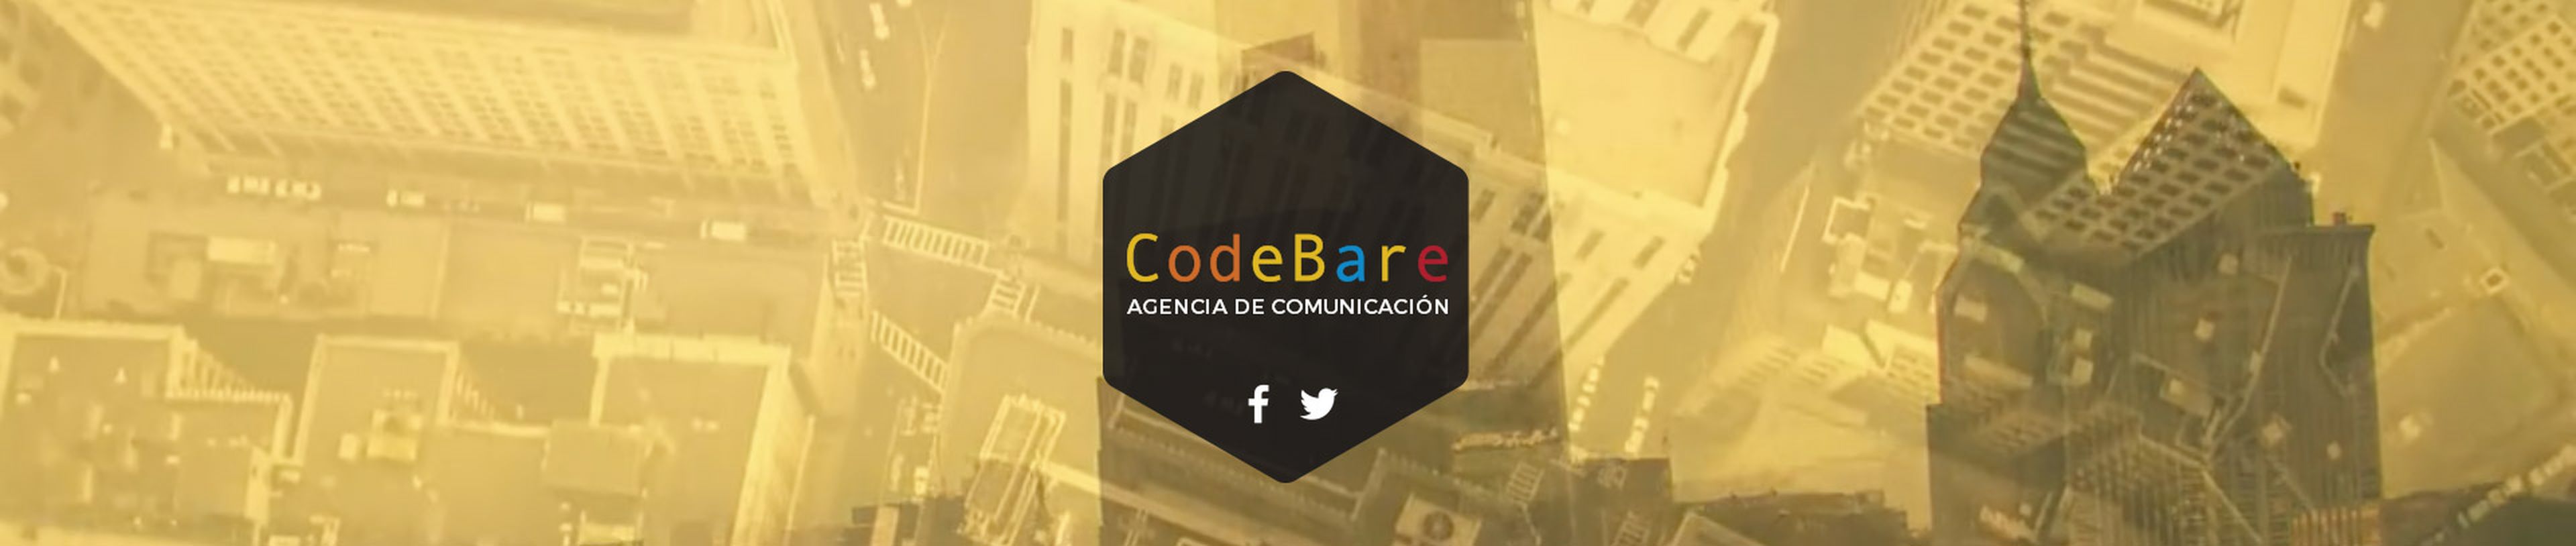 CodeBare